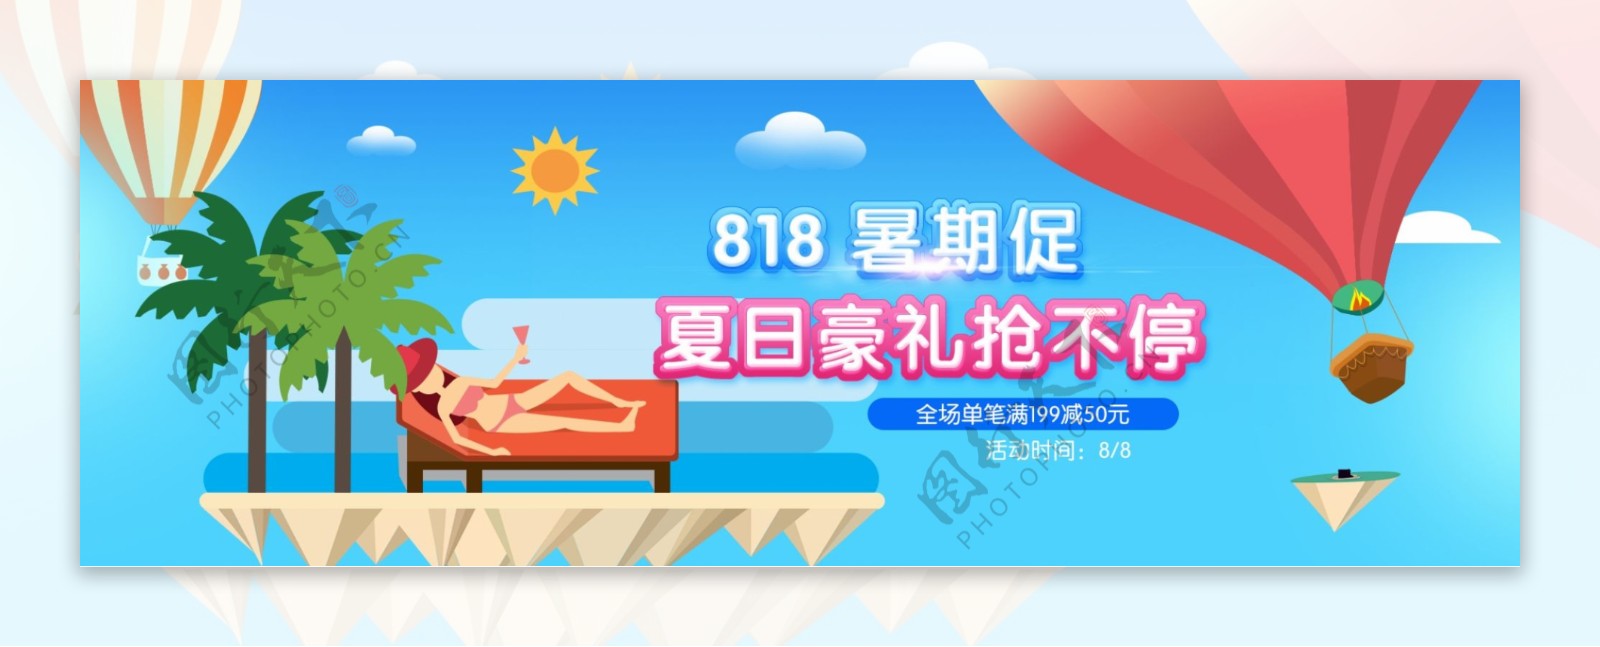 电商淘宝京东天猫818暑期促首页全屏海报